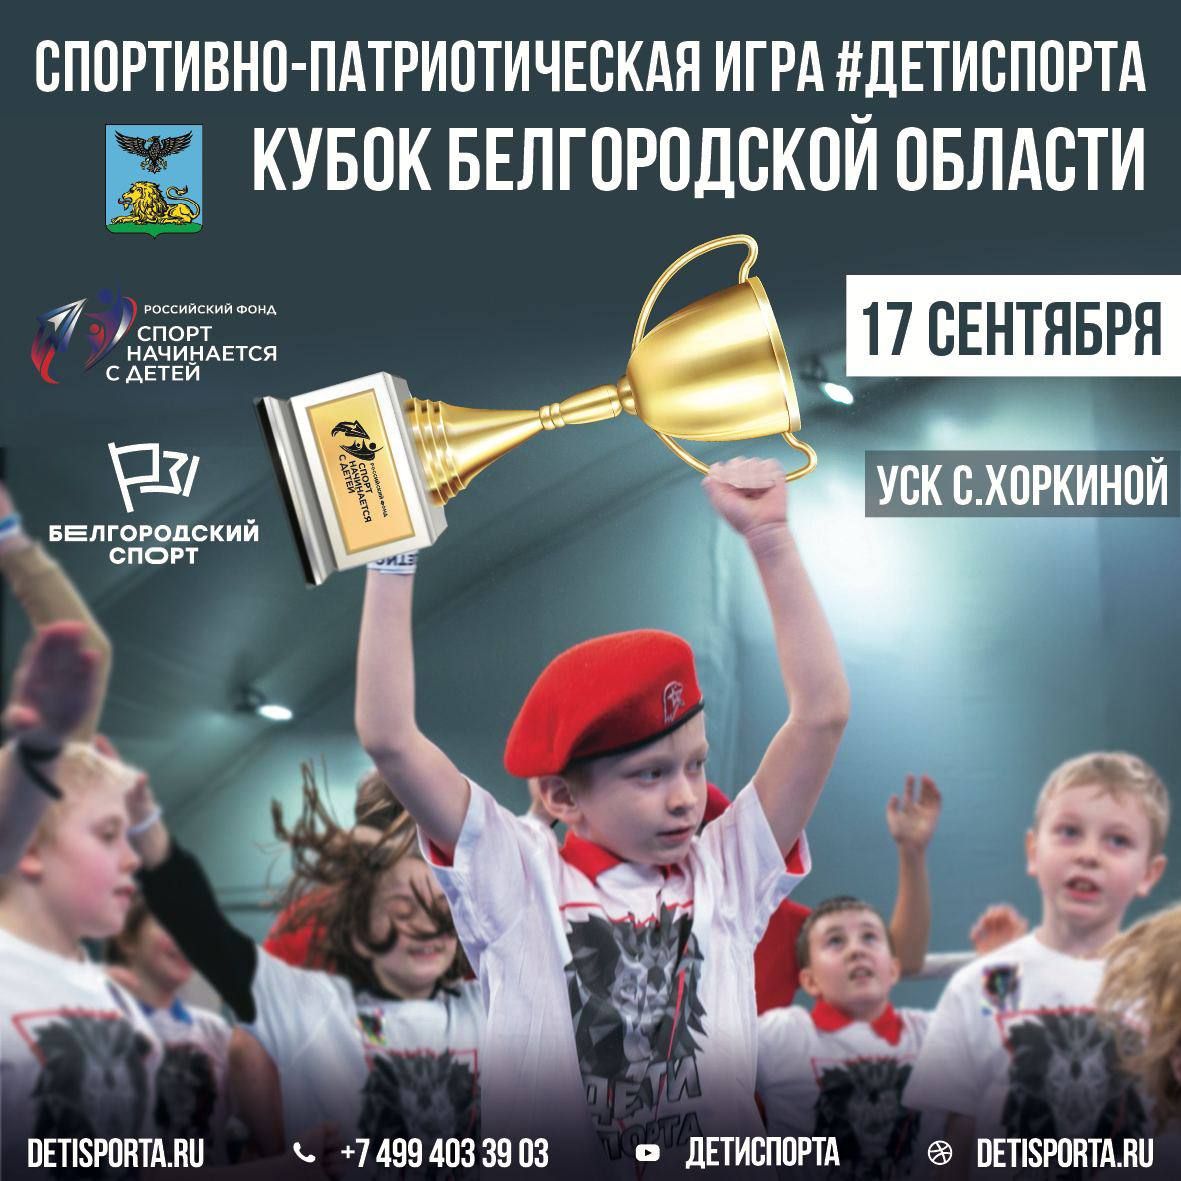 Итоги спортивно-патриотической игры «Дети спорта», кубок Белгородской области